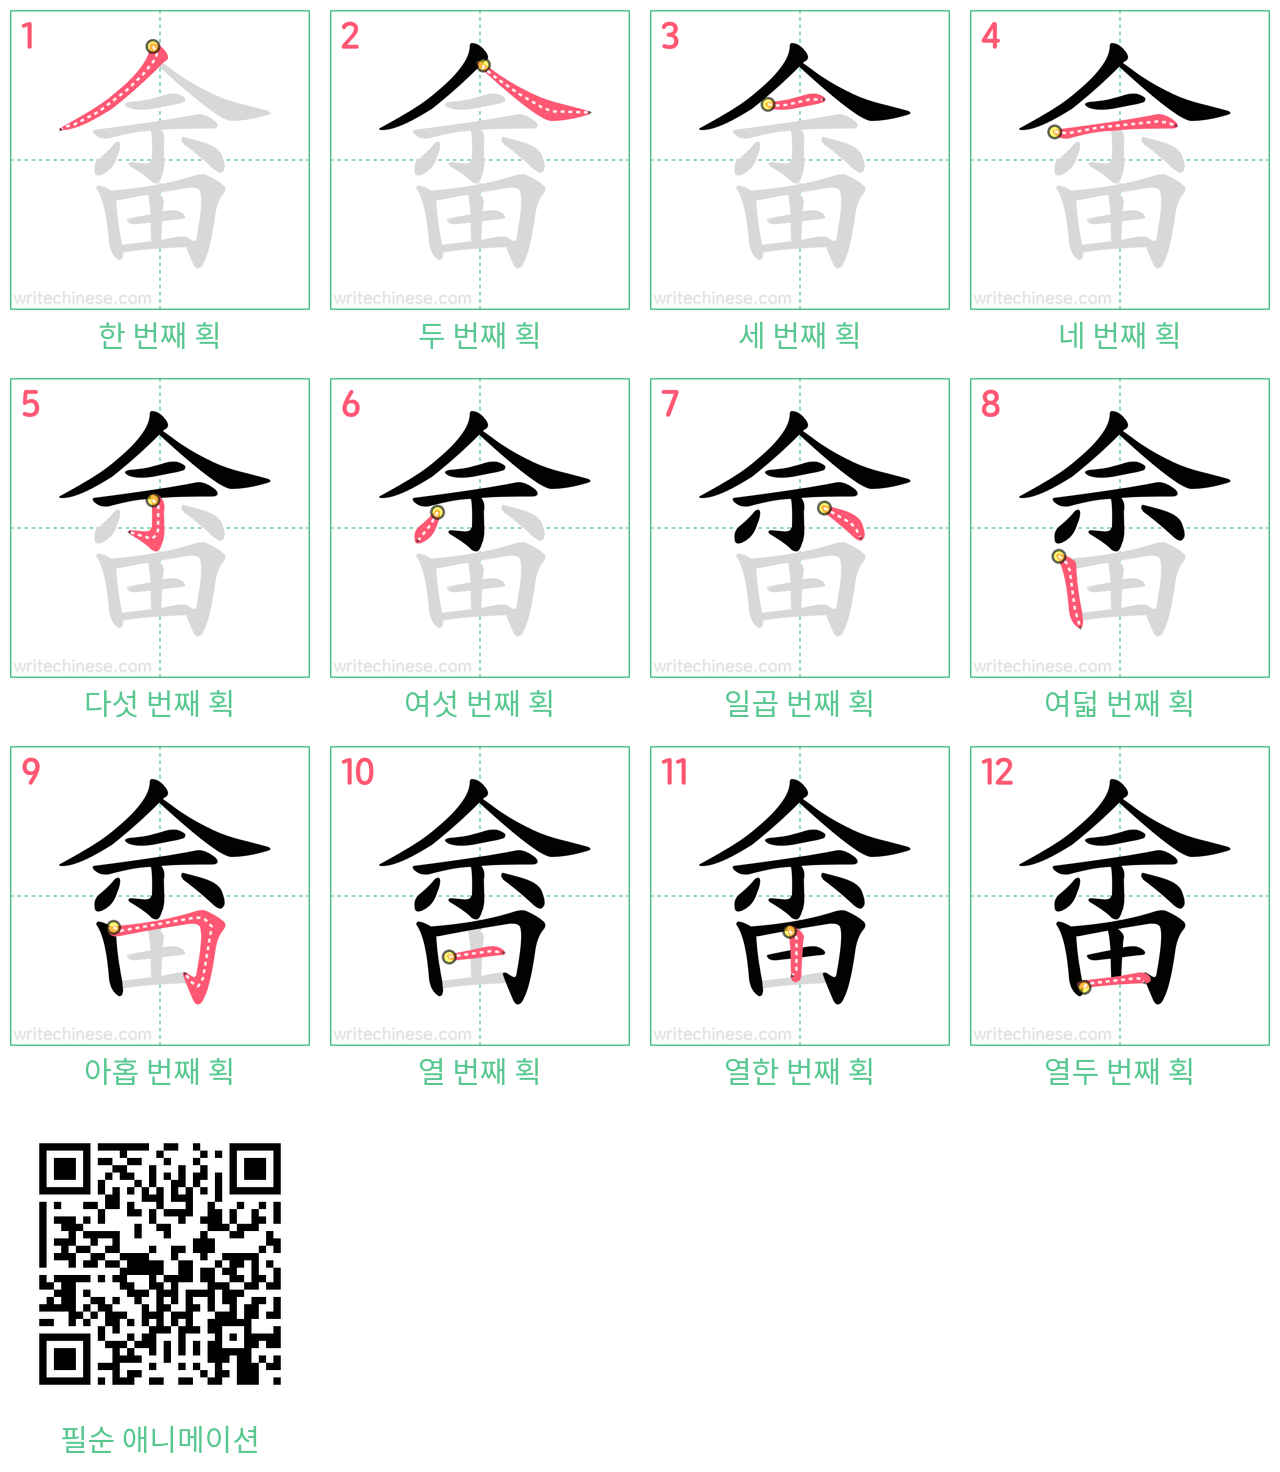 畲 step-by-step stroke order diagrams